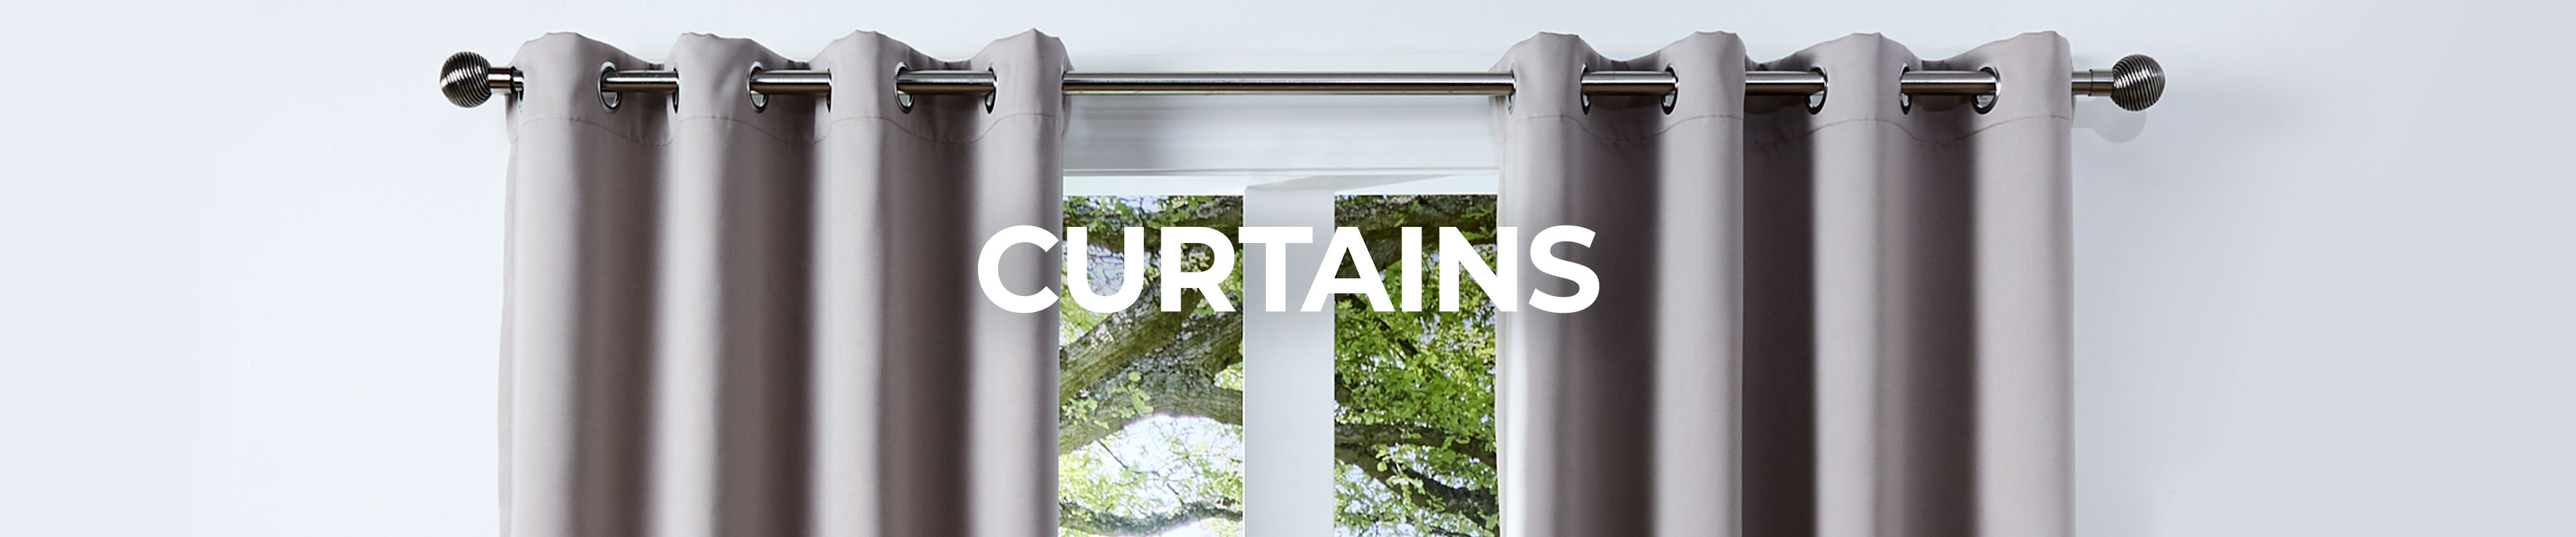 Shop Our Curtains Range